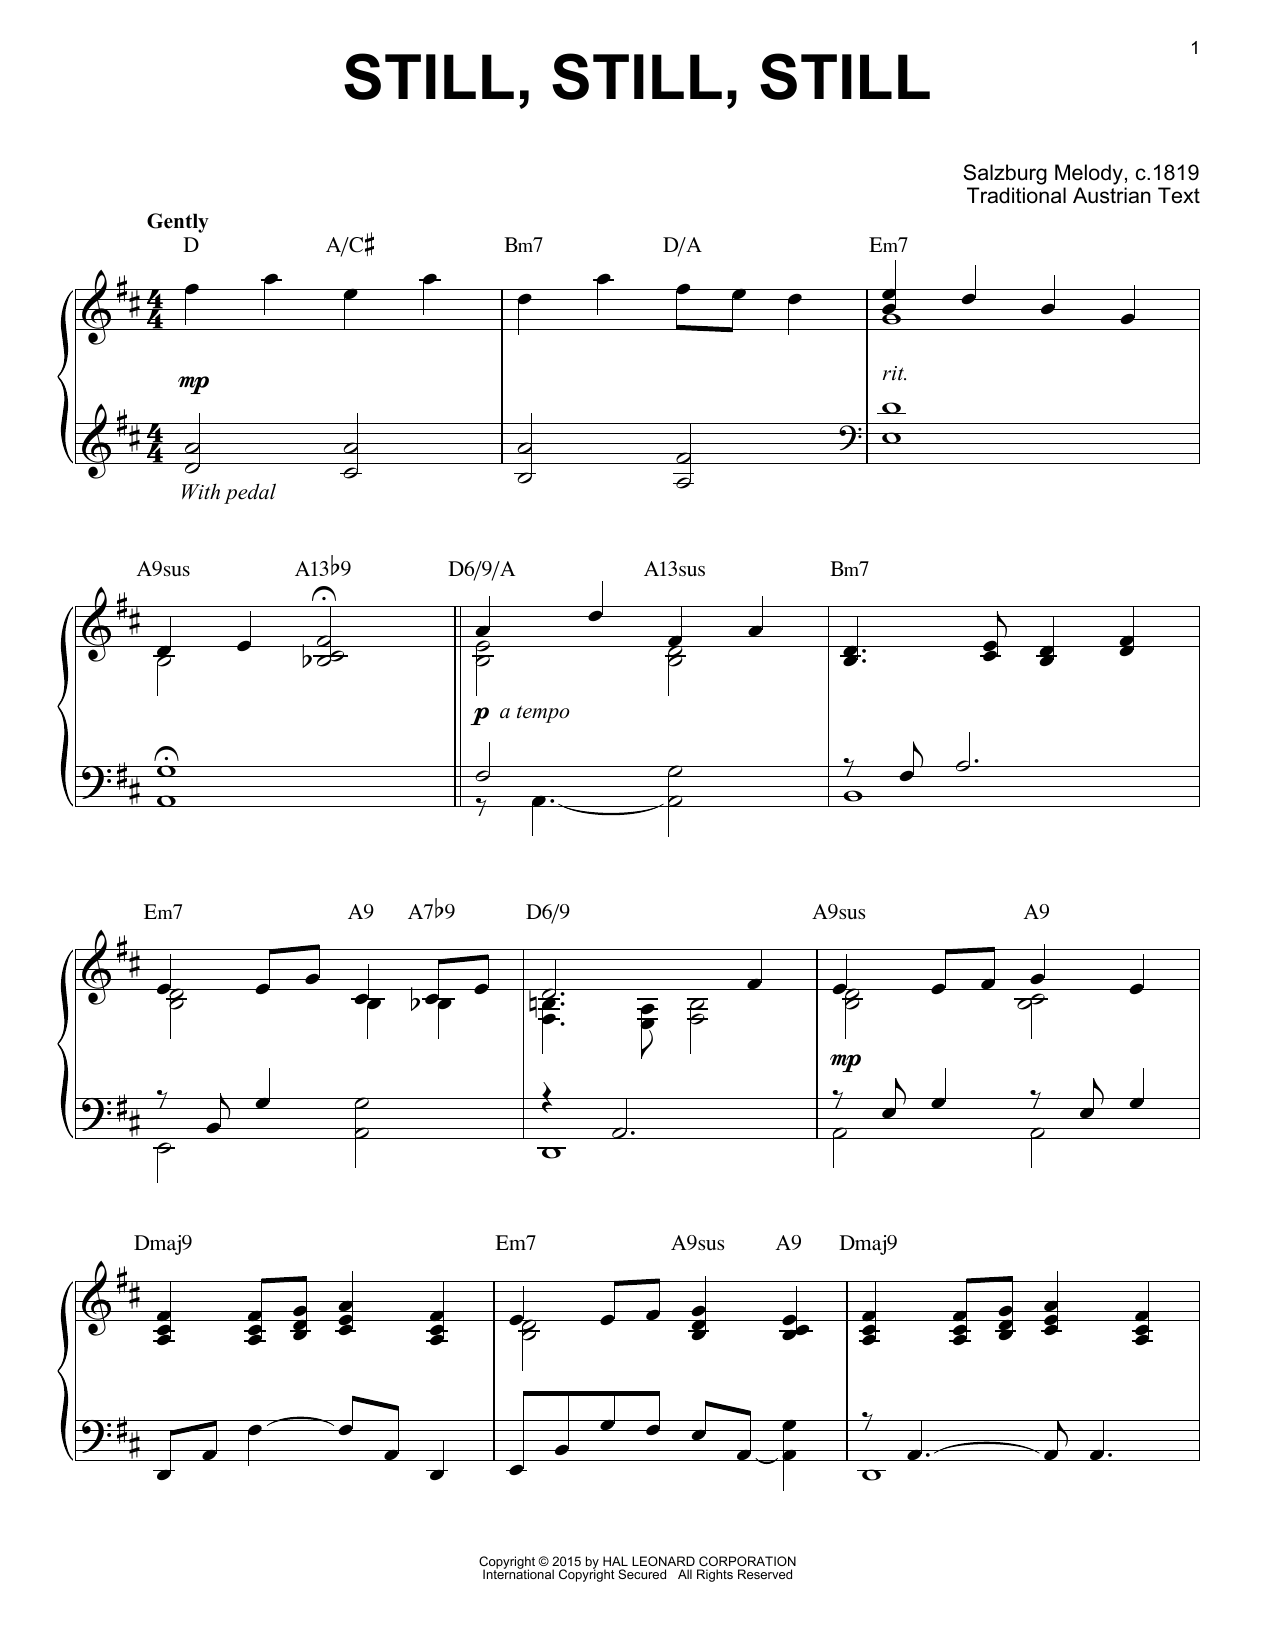 Salzburg Melody c.1819 Still, Still, Still [Jazz version] (arr. Brent Edstrom) sheet music notes and chords arranged for Piano Solo